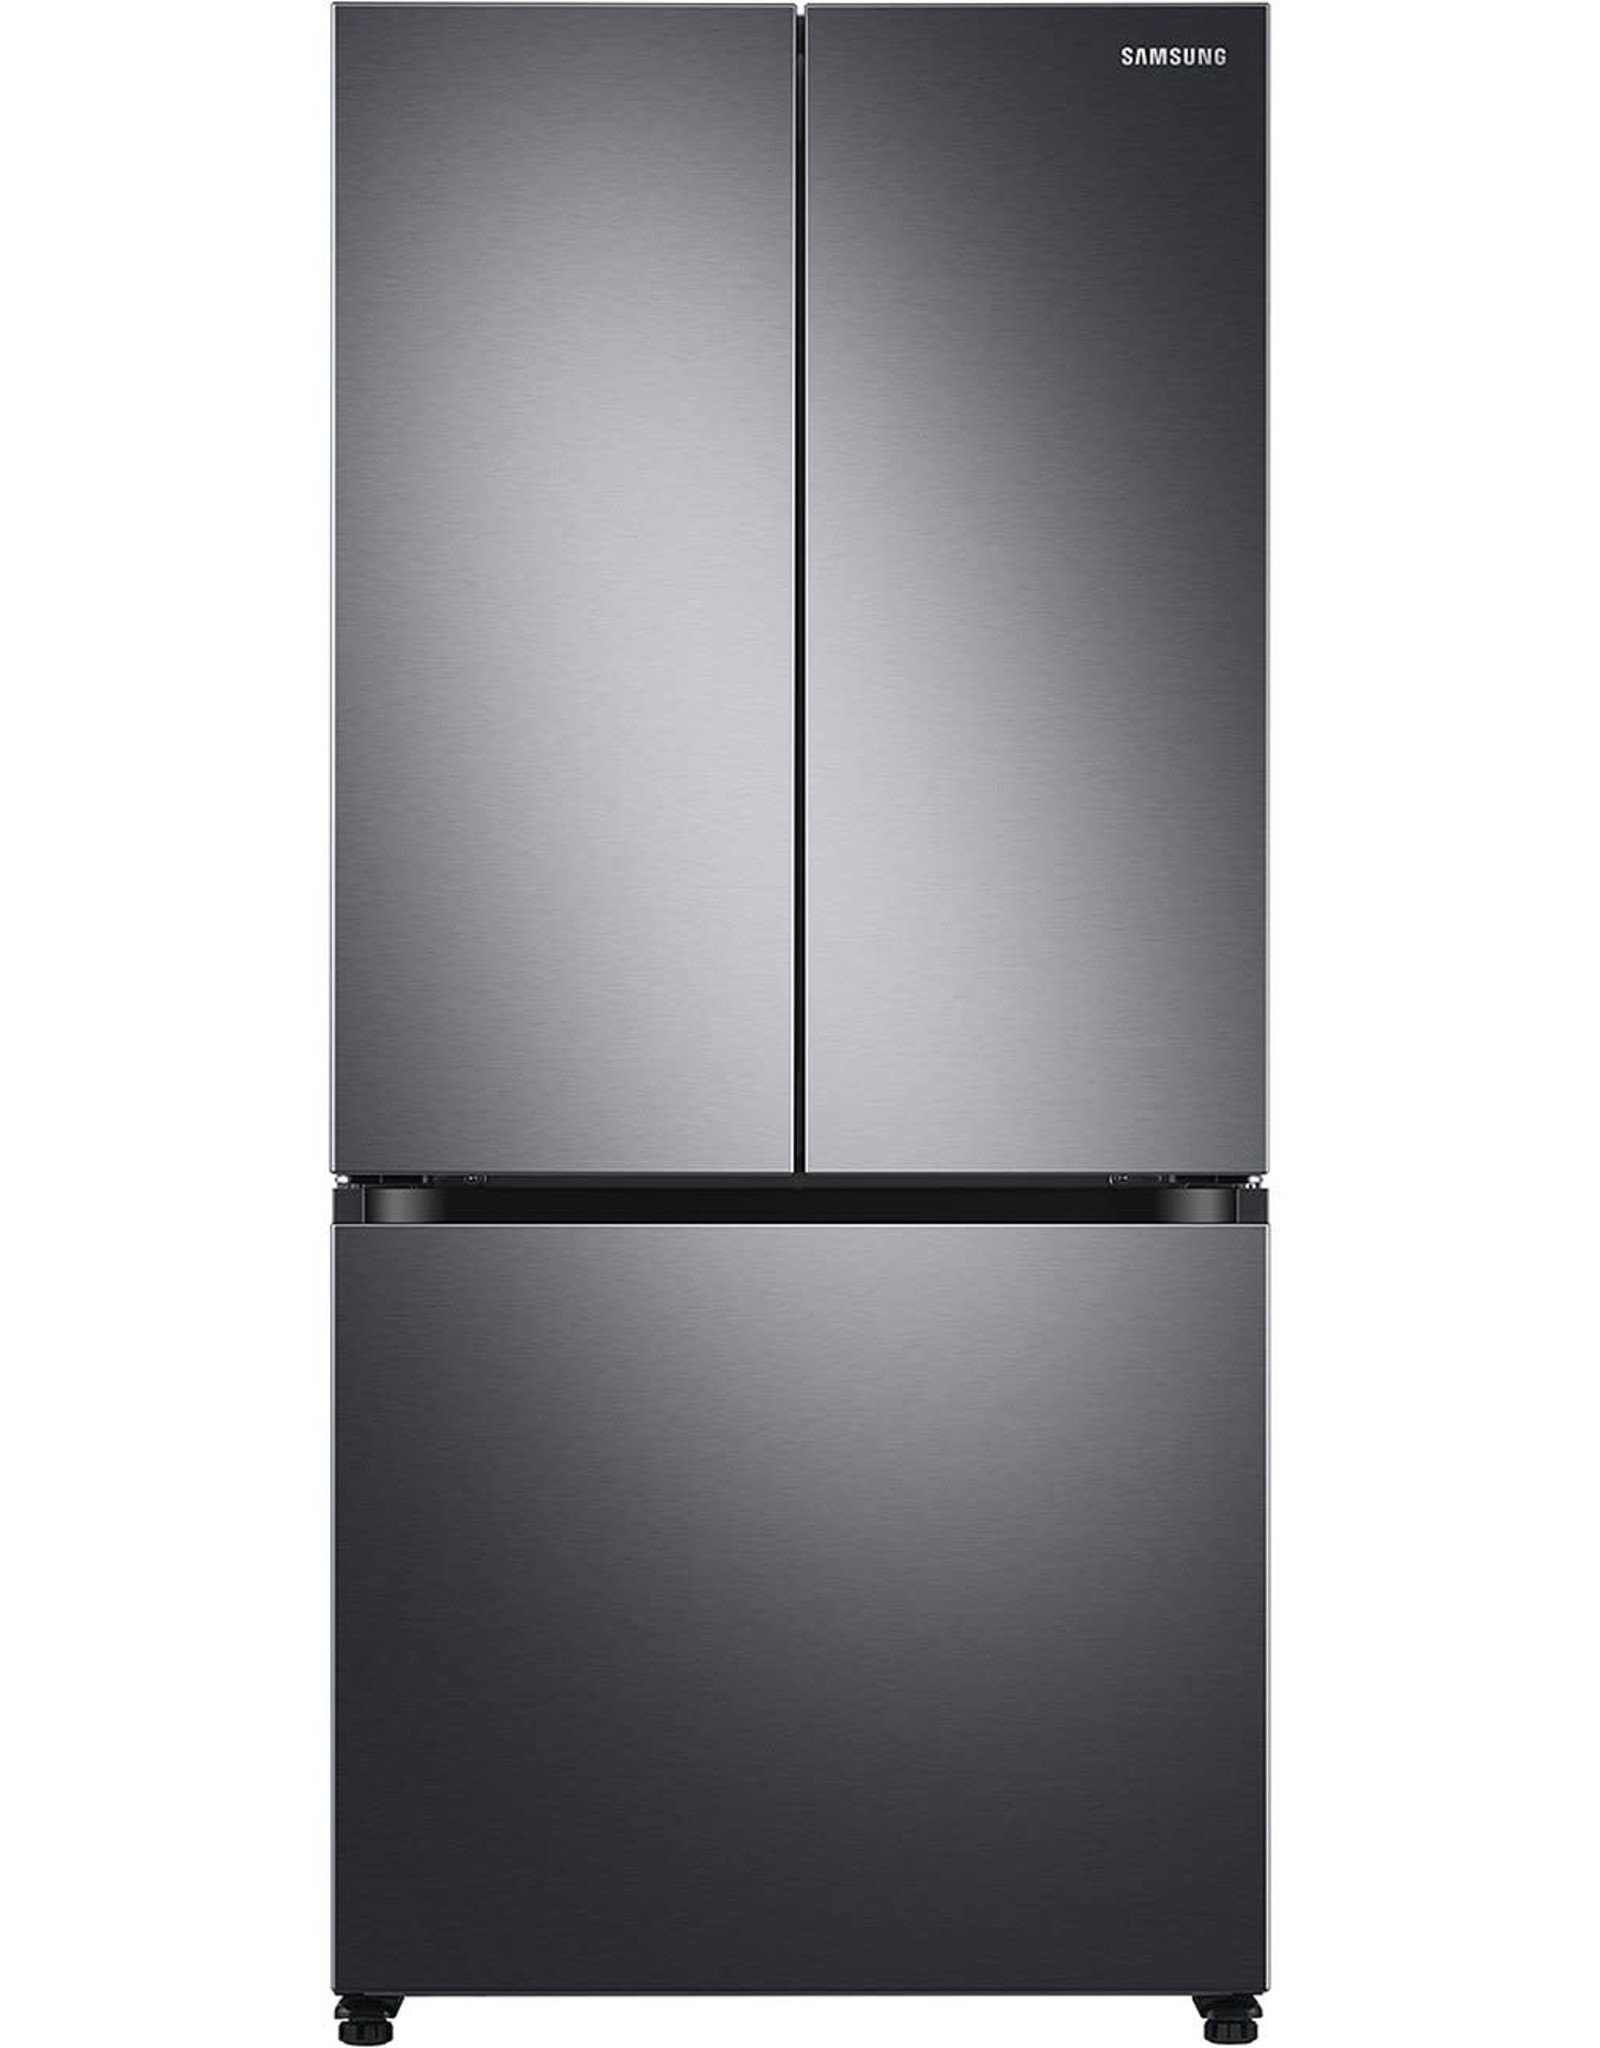 SAMSUNG RF18A5101SG 17.5 cu. ft. 3-Door French Door Smart Refrigerator in Black Stainless Steel, Counter Depth